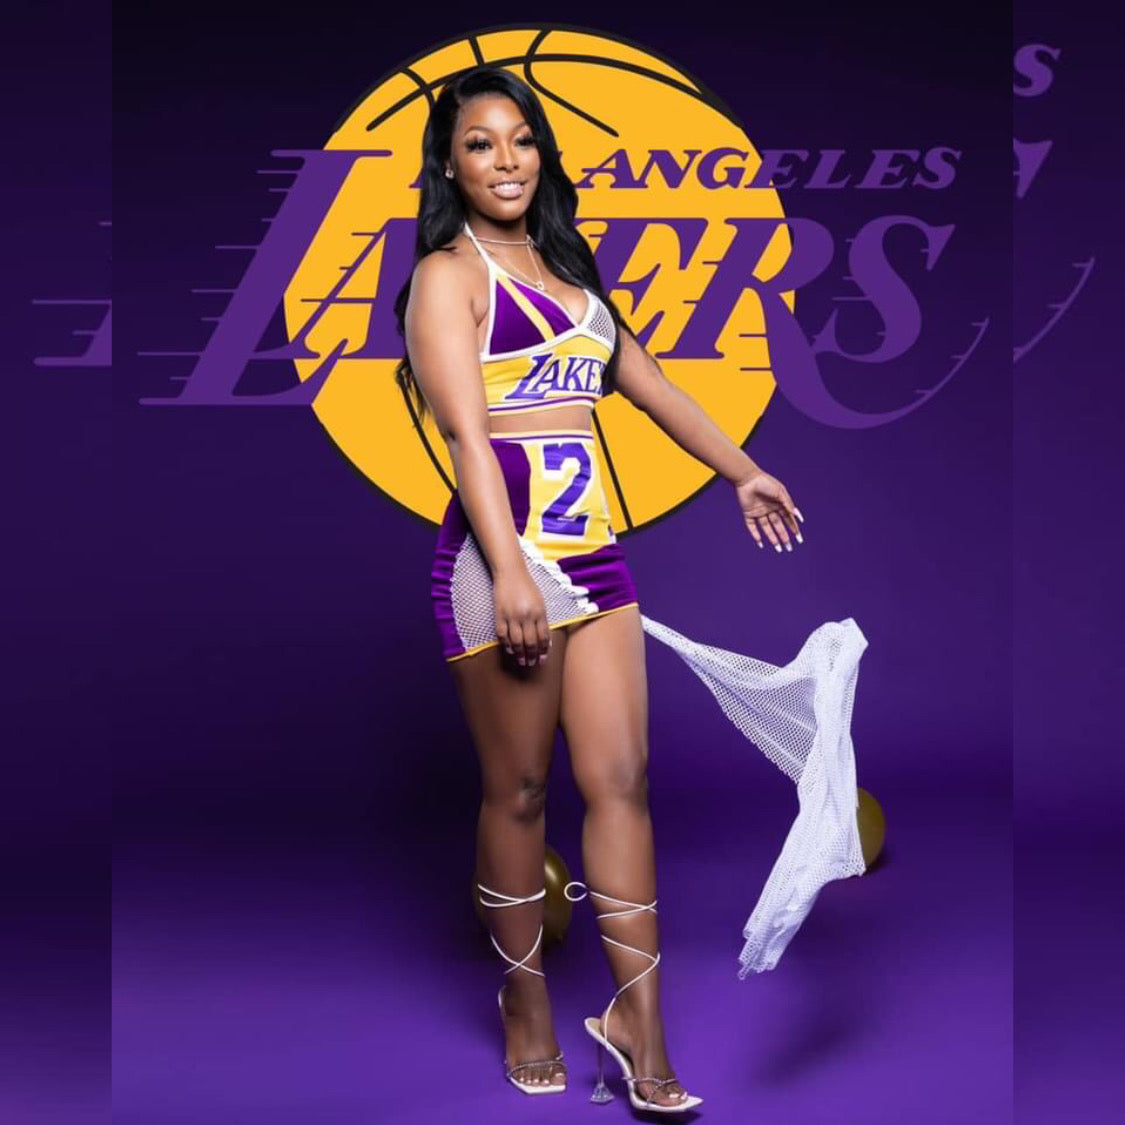 out of stock)Women's Lakers Jersey Dress #24 Kobe Bryant XL - Kobe